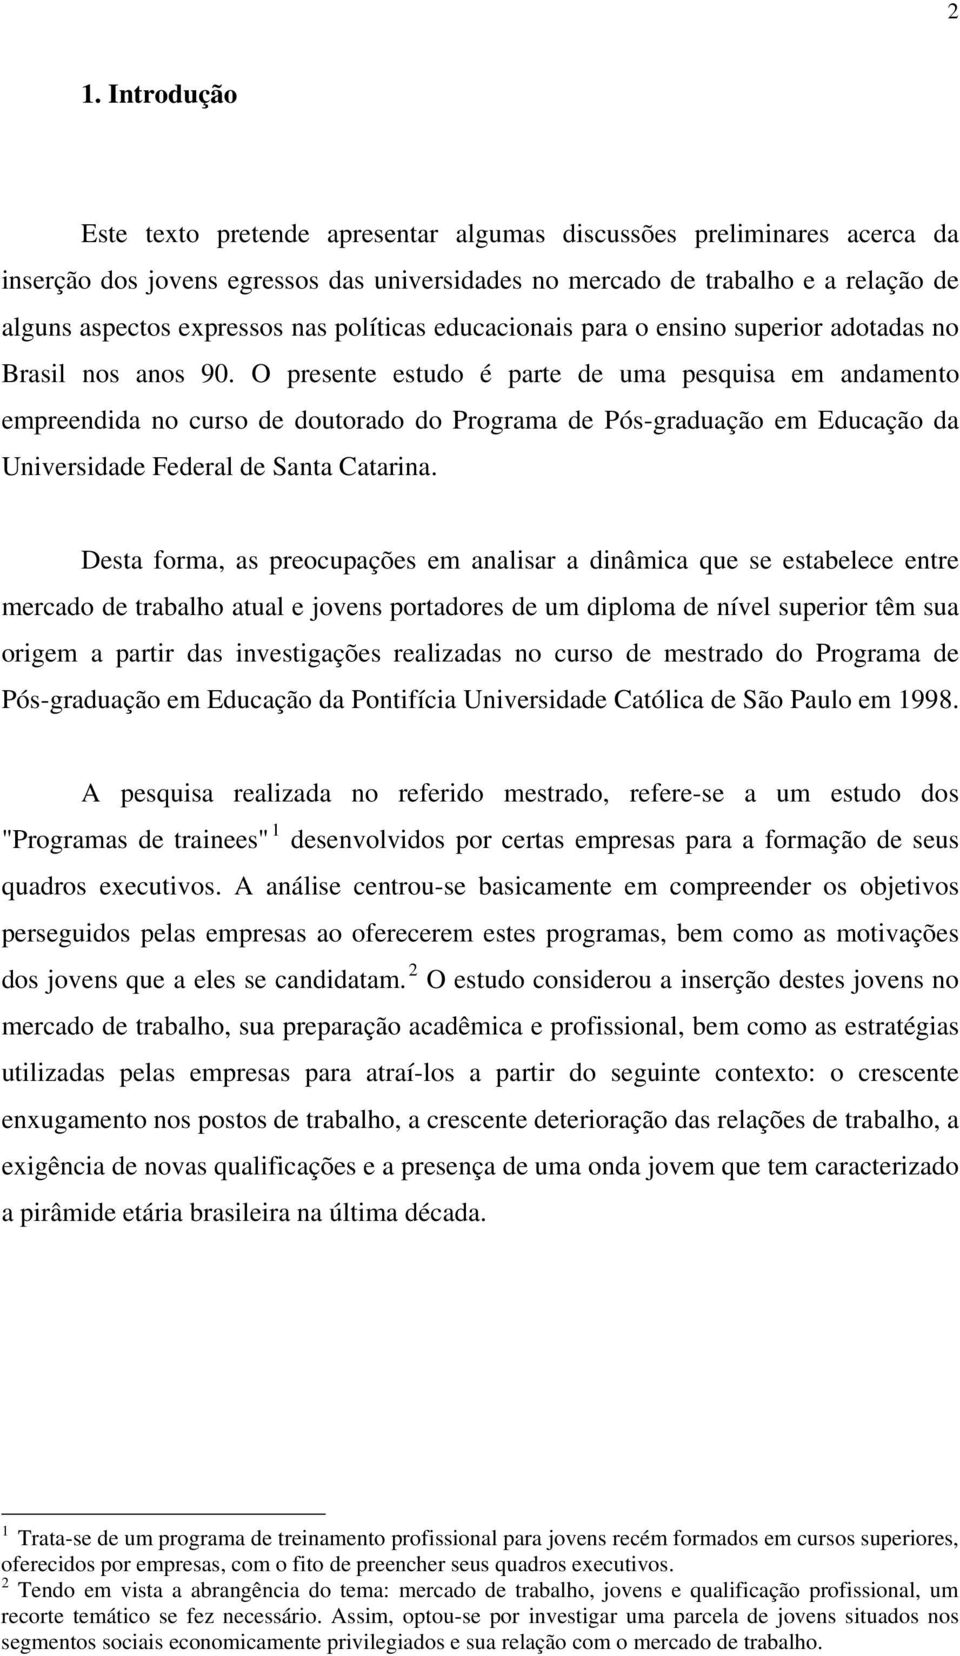 O presente estudo é parte de uma pesquisa em andamento empreendida no curso de doutorado do Programa de Pós-graduação em Educação da Universidade Federal de Santa Catarina.